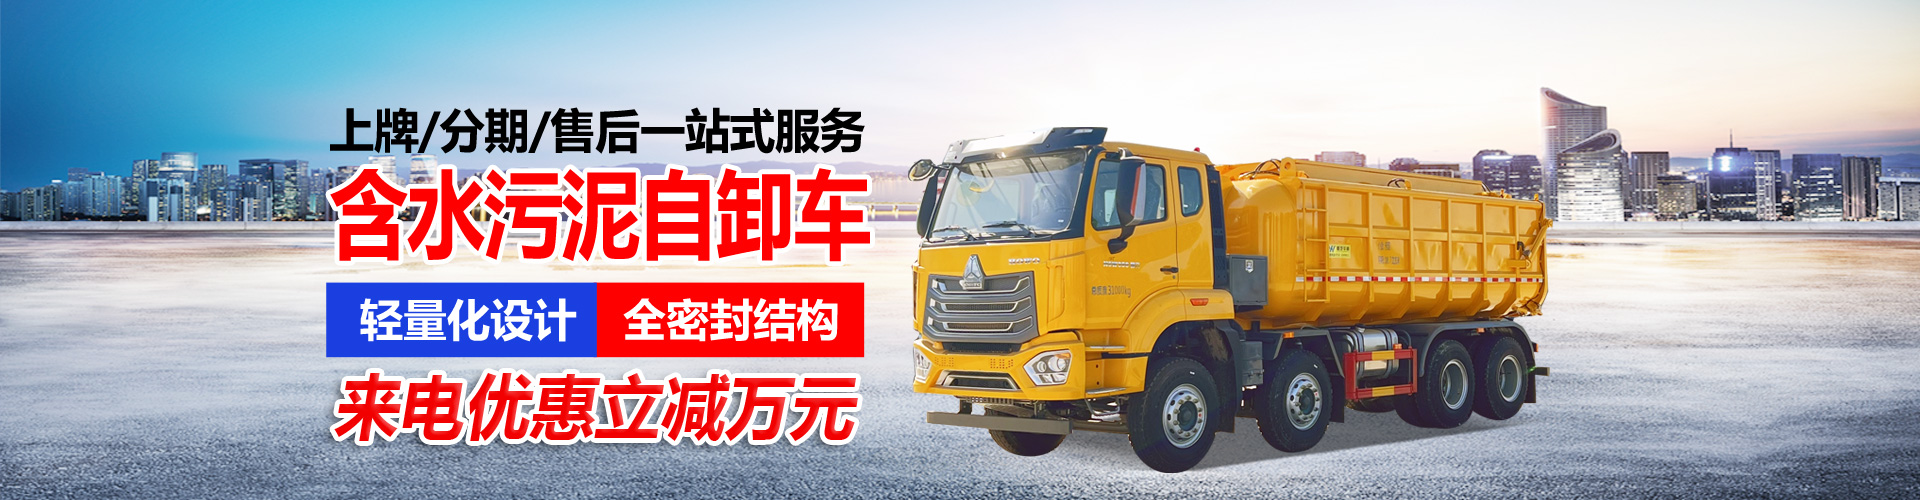 中国重汽集团湖北华威专用汽车有限公司